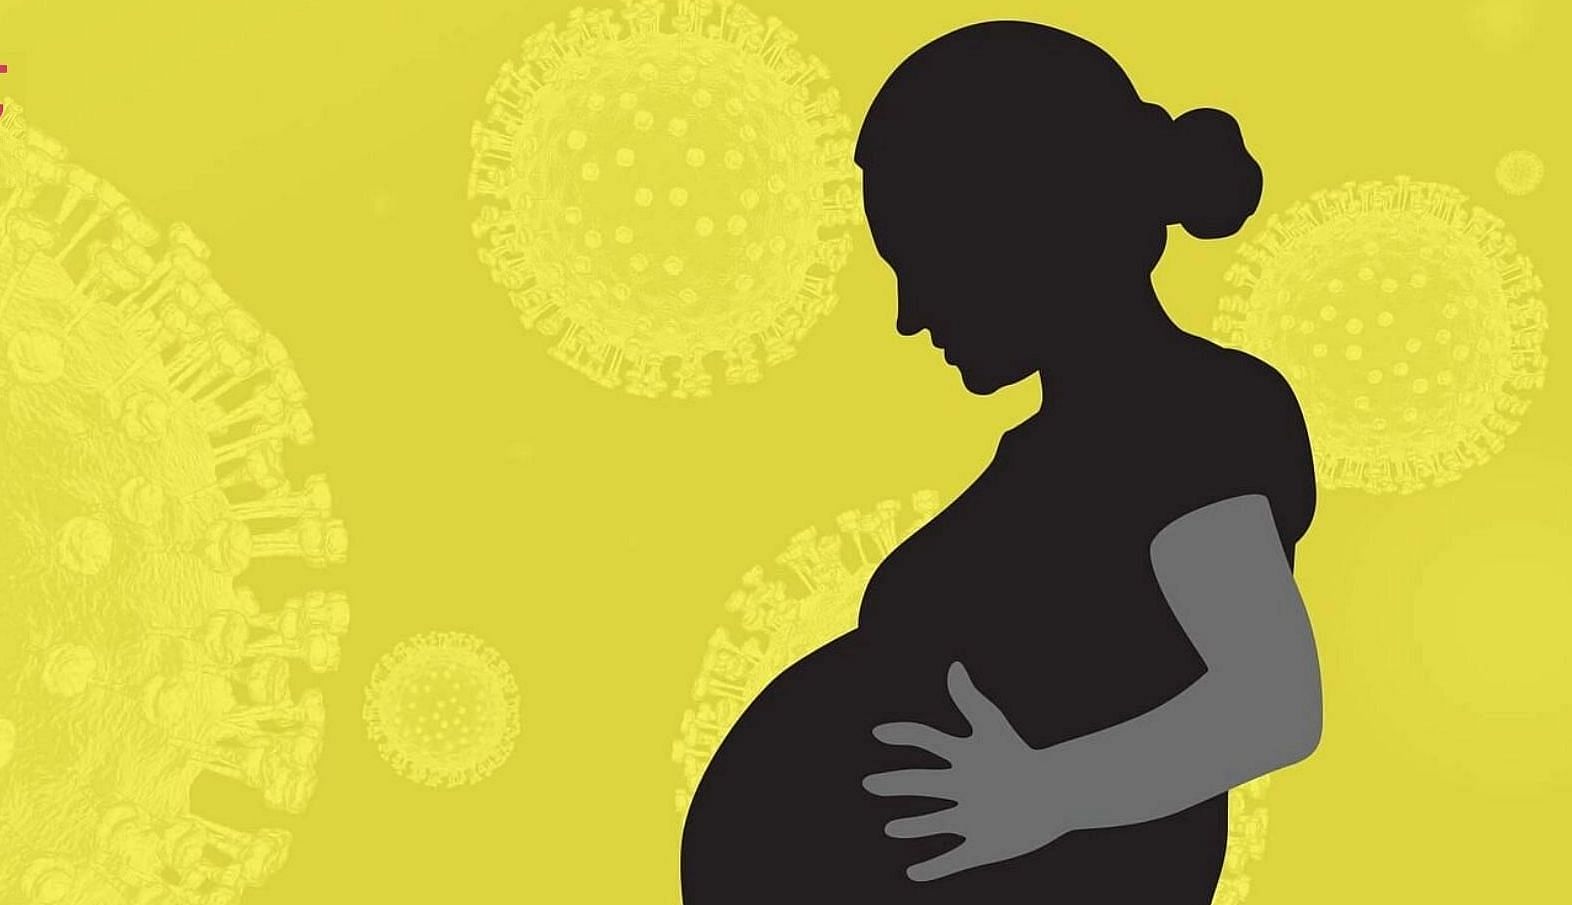 <div class="paragraphs"><p>अब गर्भवती महिलाएं लगवा सकती हैं कोरोना वैक्सीन, केंद्र ने दी मंजूरी</p></div>